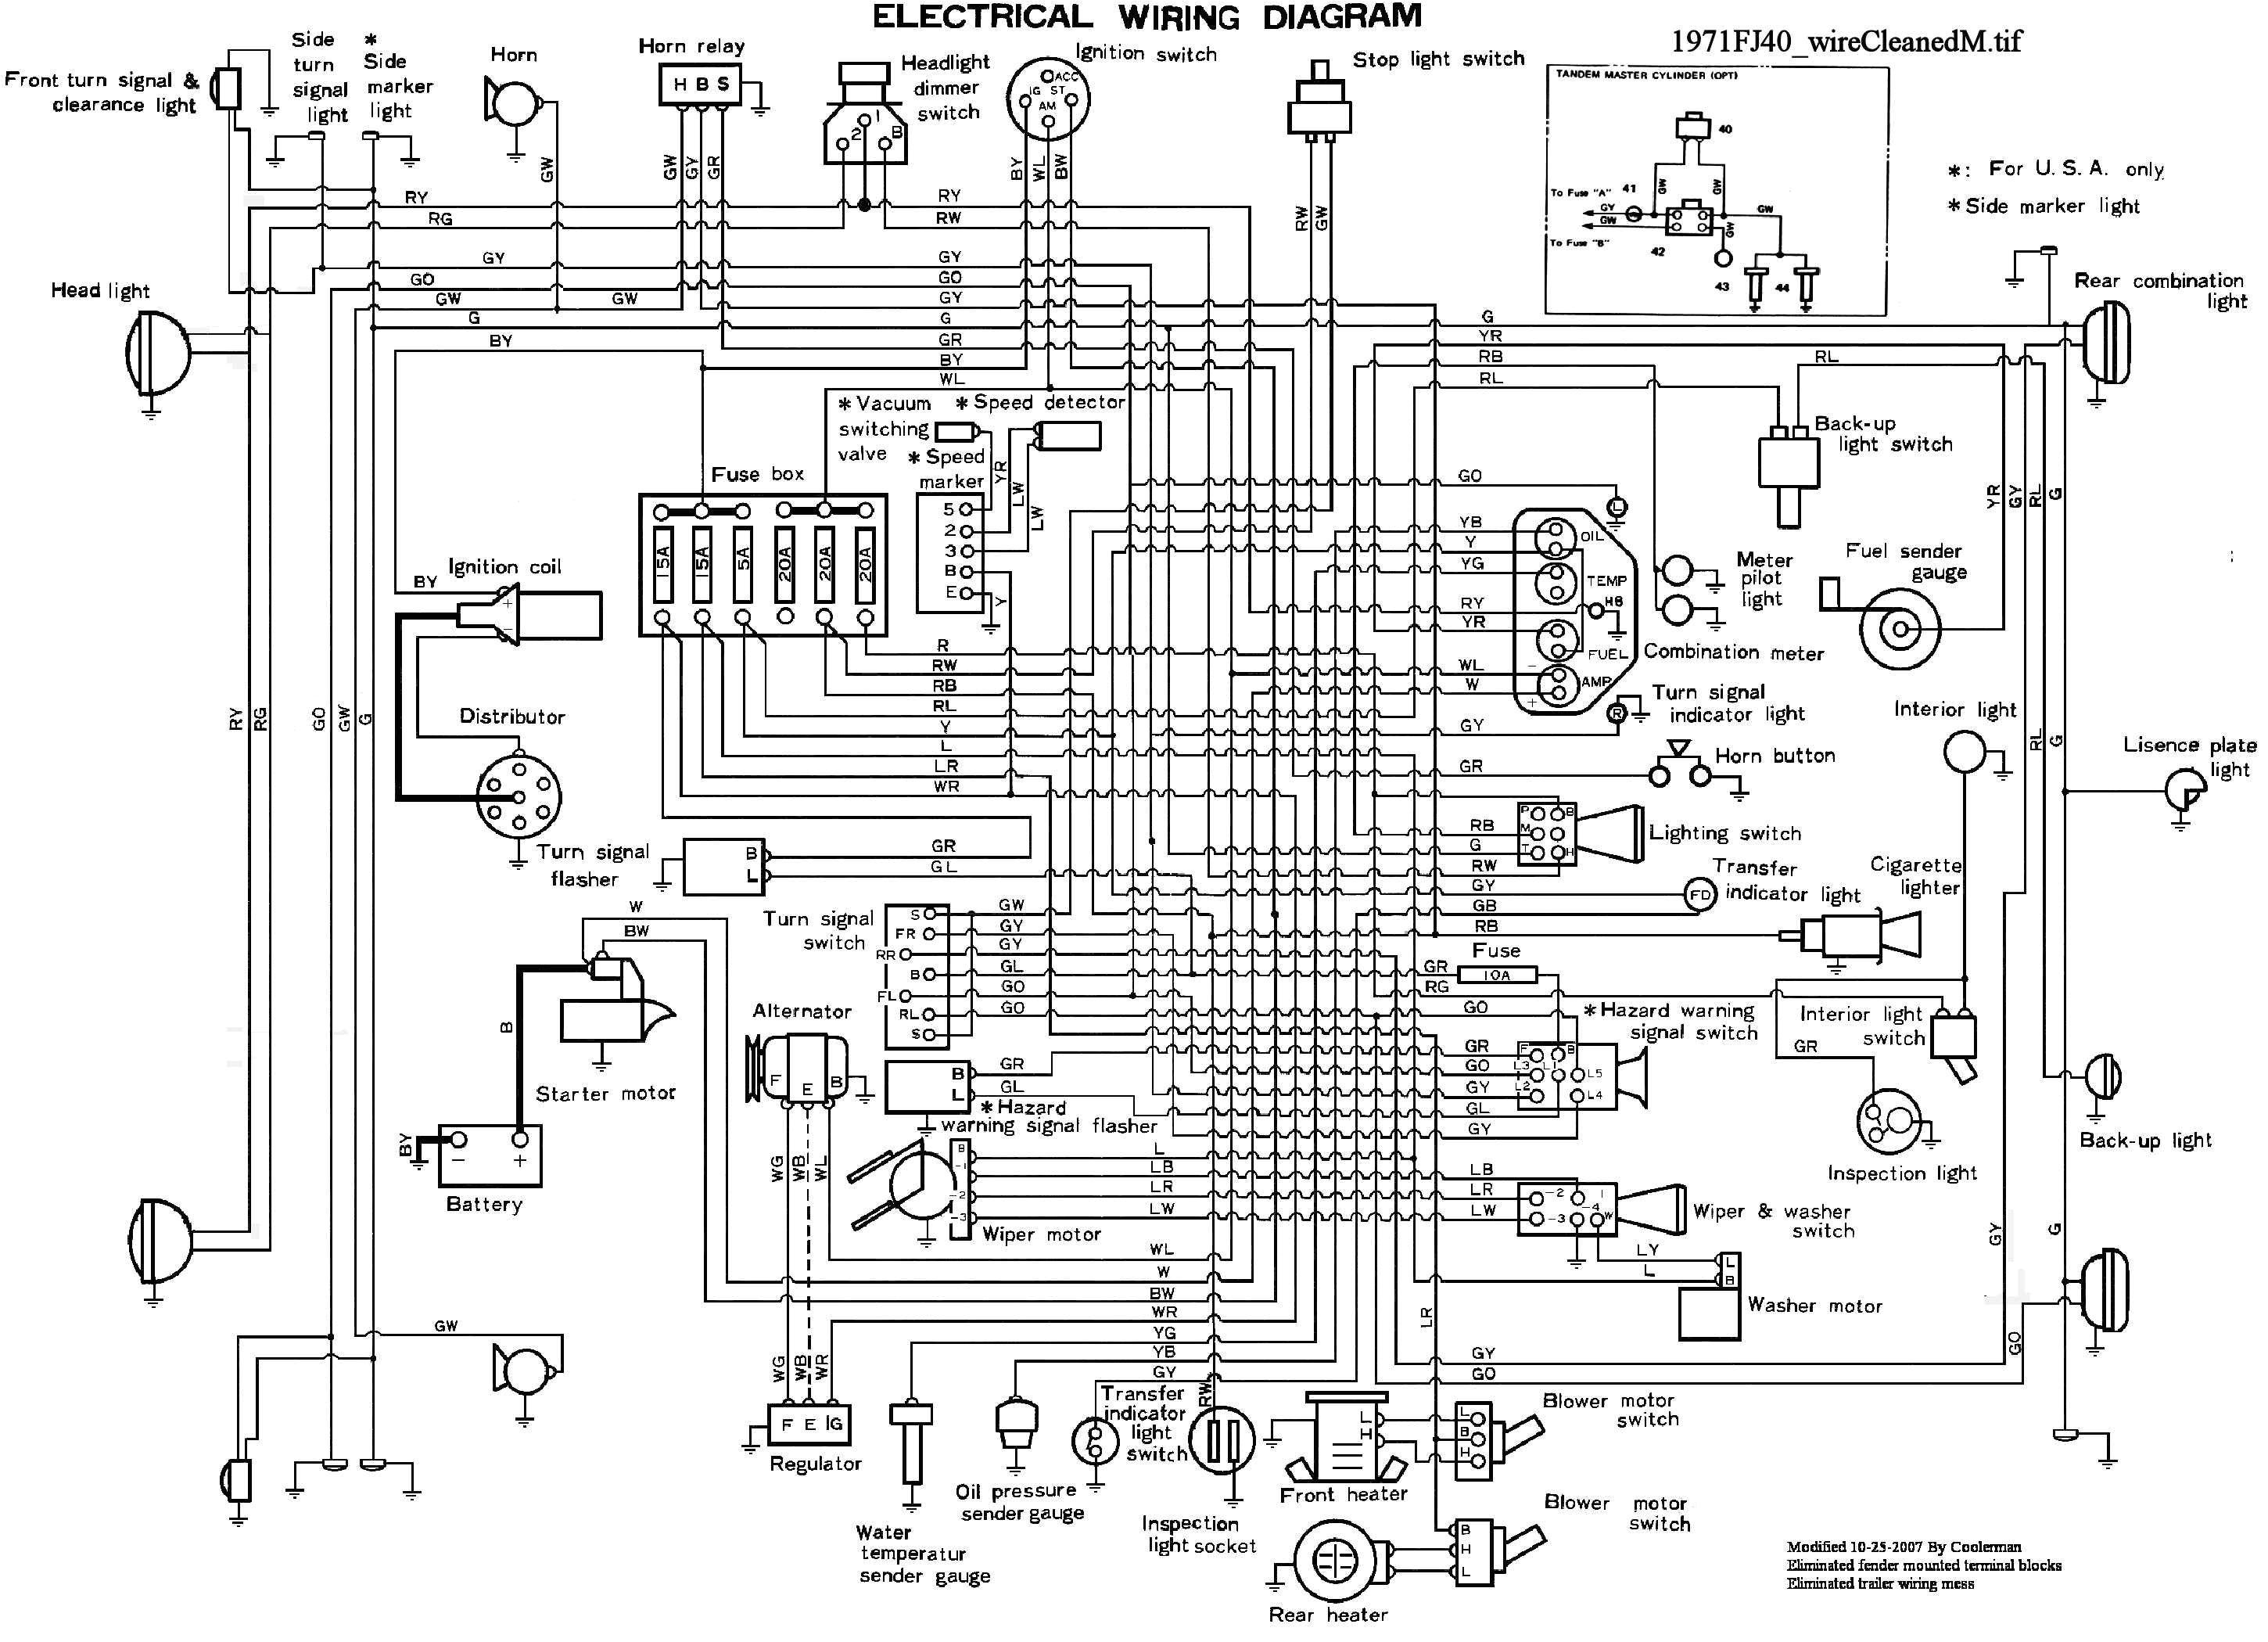 toyota land cruiser turn signal wiring diagram wiring diagram toyota land cruiser turn signal wiring diagram